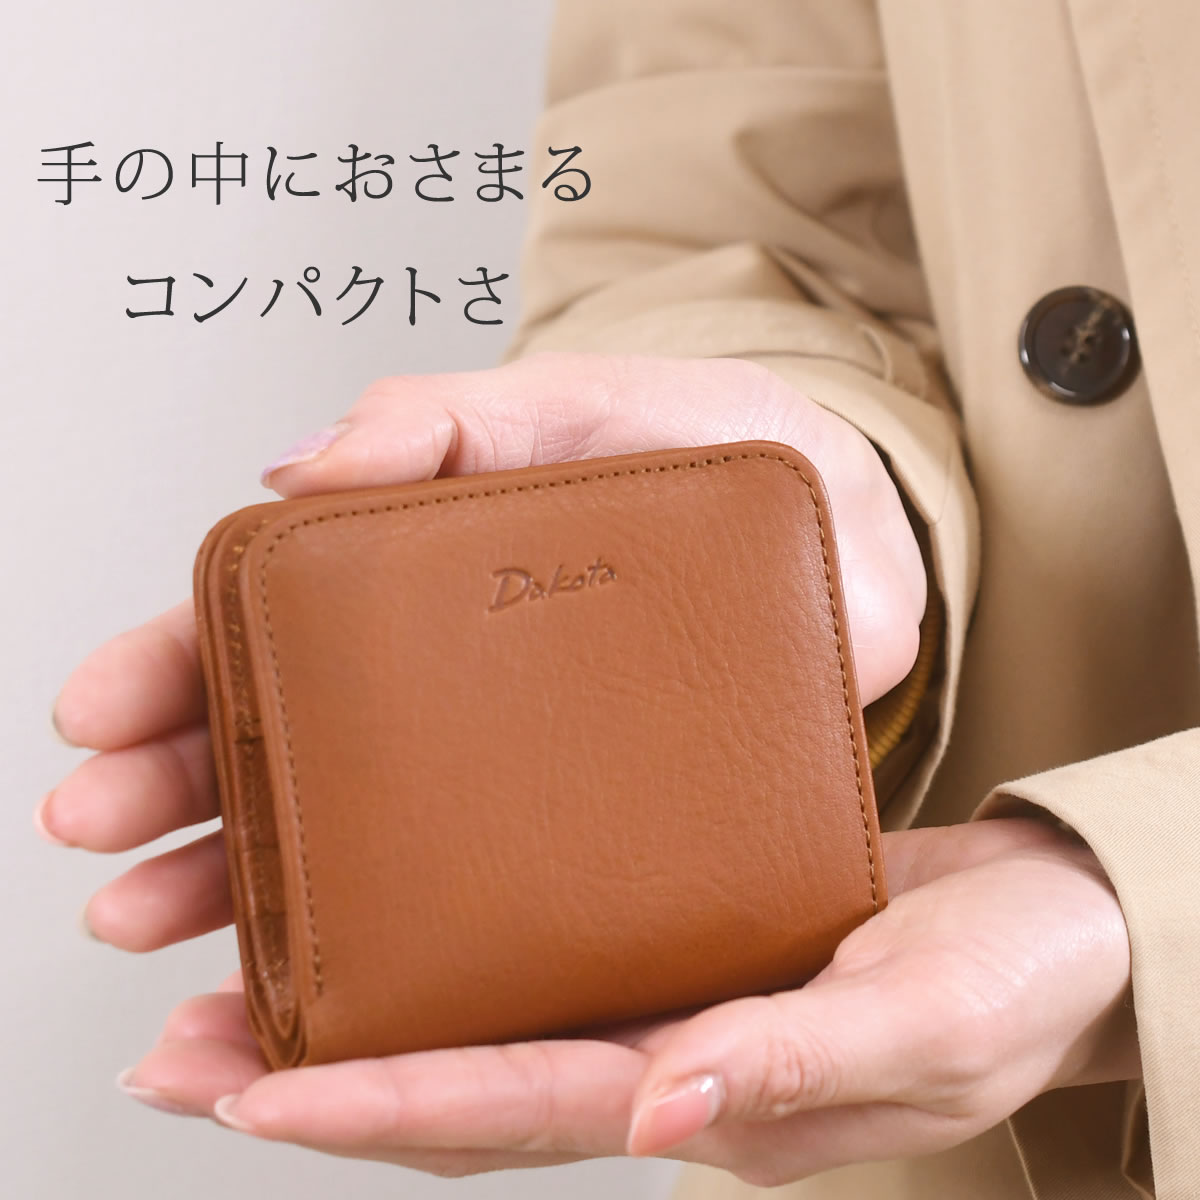 ダコタ 財布 ミニ レディース 二つ折り財布 ミニ財布 小さめ 人気 ブランド ラルゴ 日本製 使いやすい 折り財布 dakota